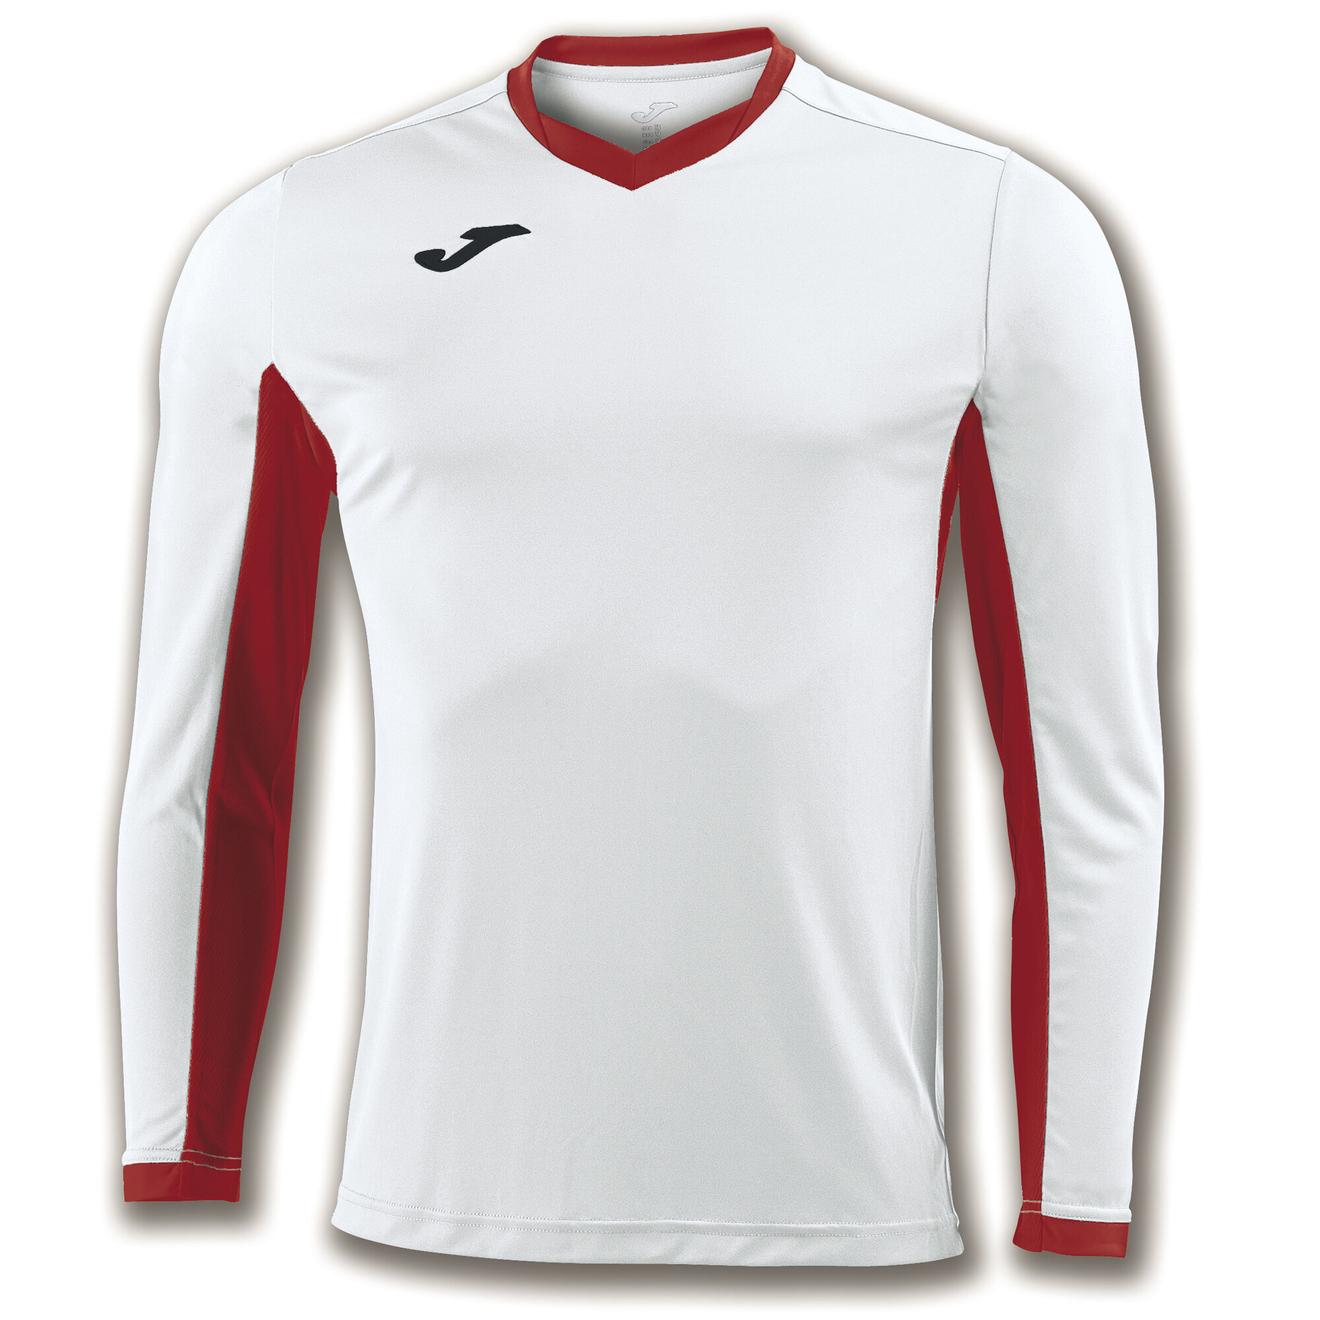 Oferta de Camiseta manga larga hombre Championship IV blanco rojo por $7,75 en Joma